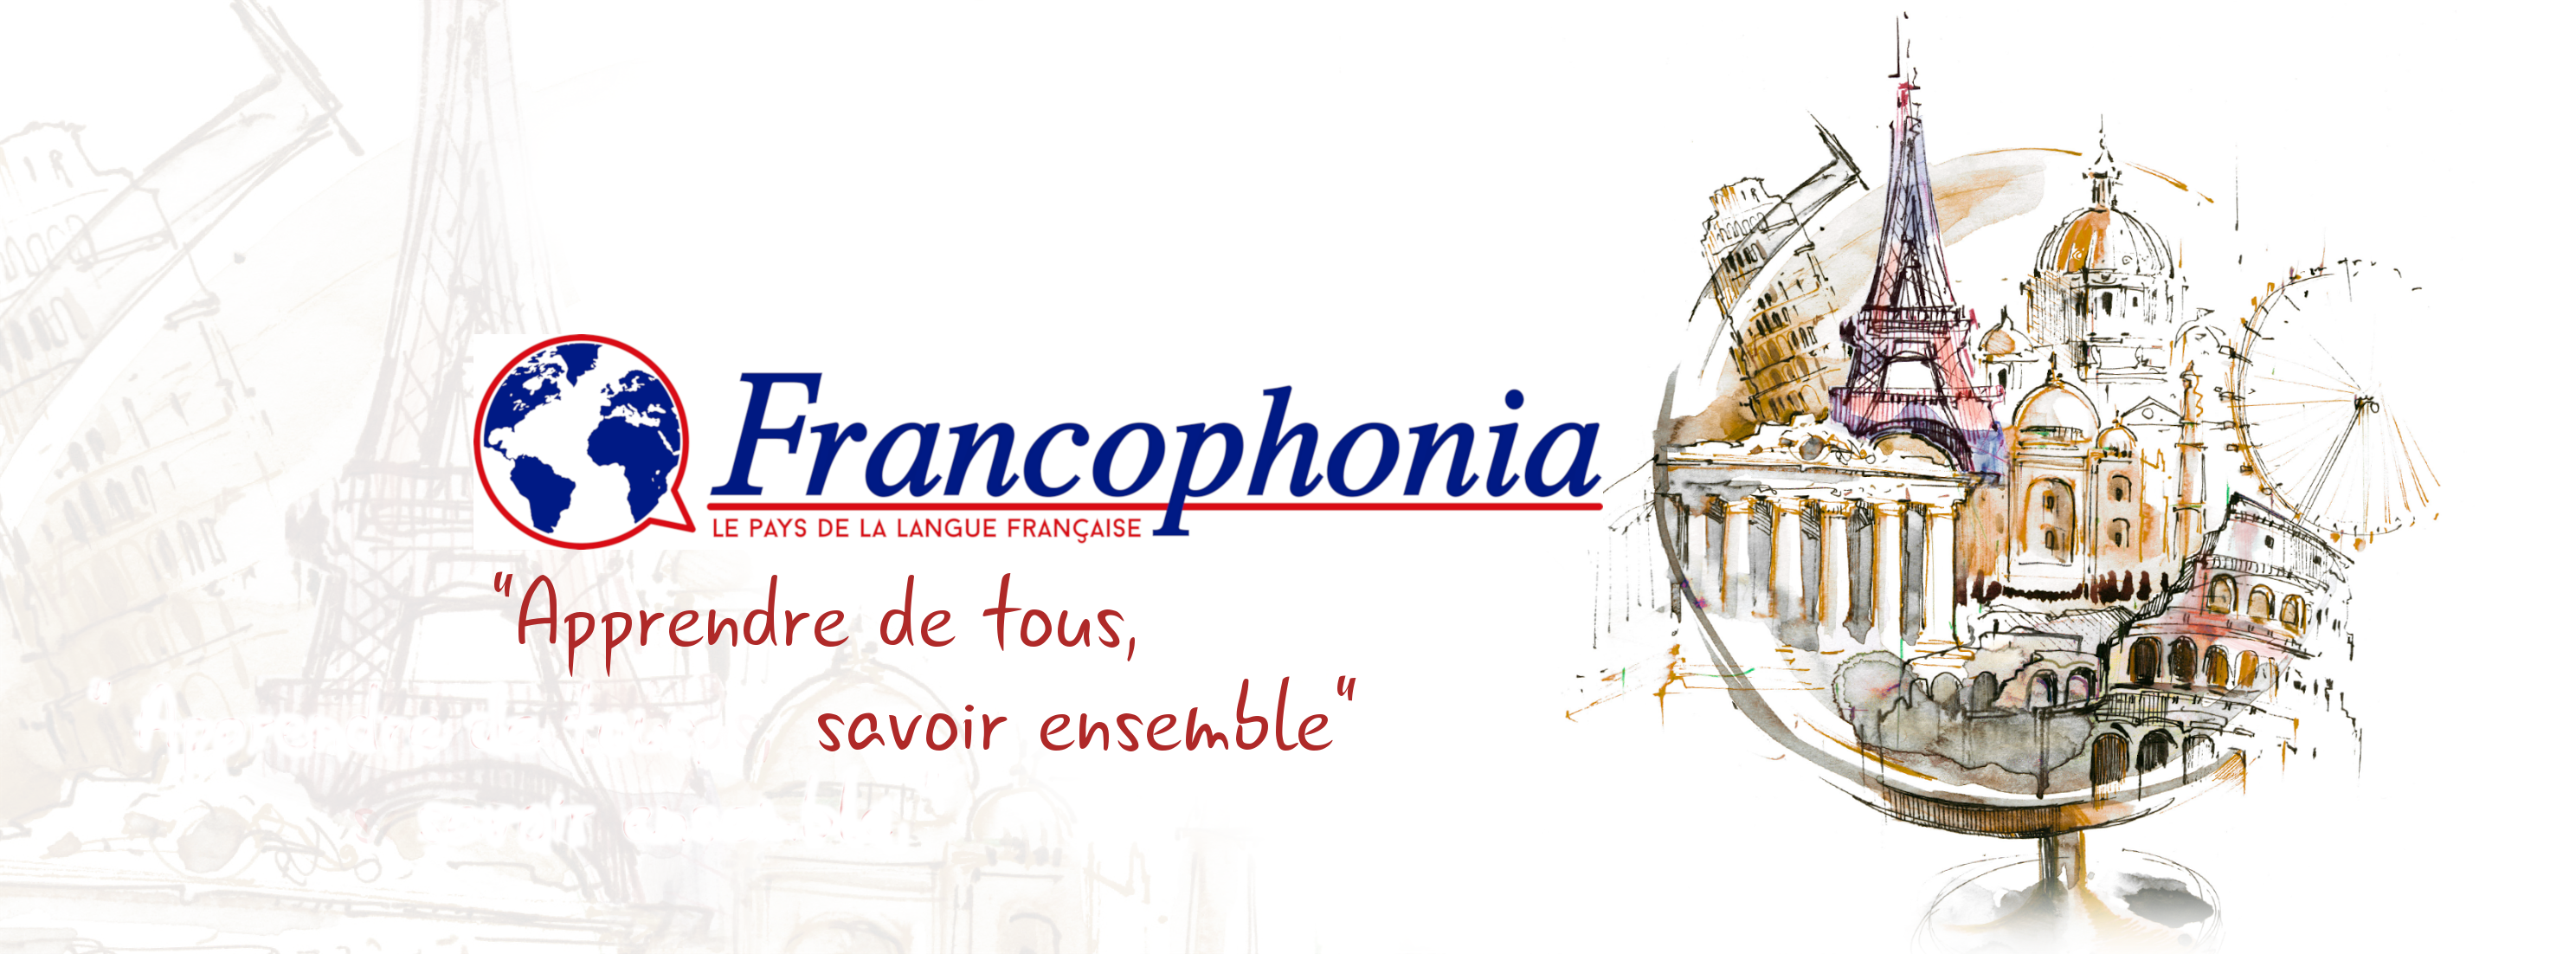 Francophonia : Participez à notre jeu concours « Je suis, parce que nous sommes.. »